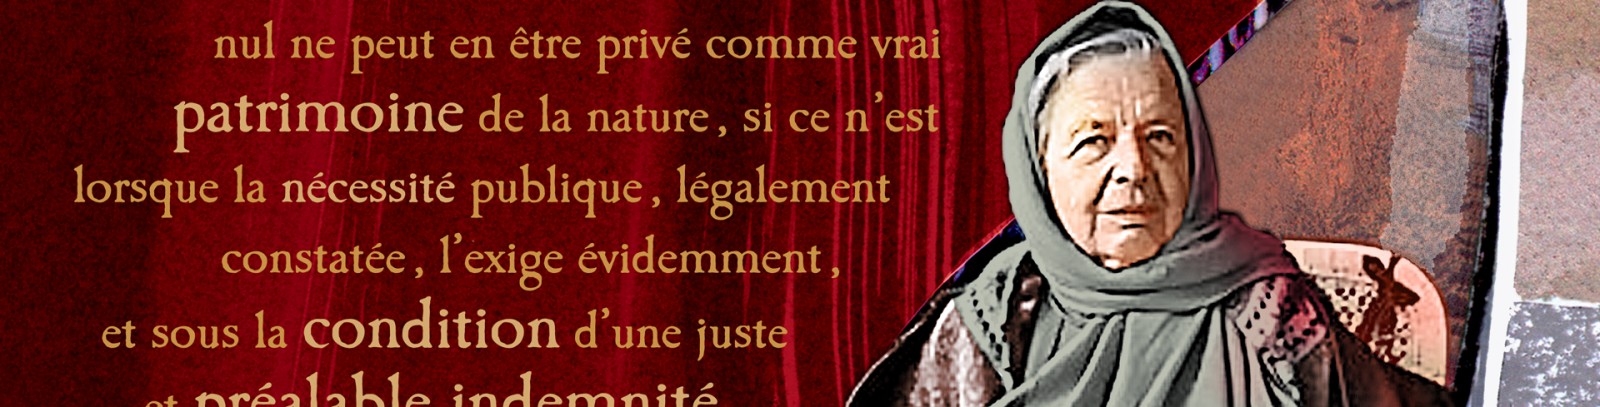 Madame Hélène Carrère d’Encausse, marraine de la tapisserie «Hommage à Marguerite Yourcenar»